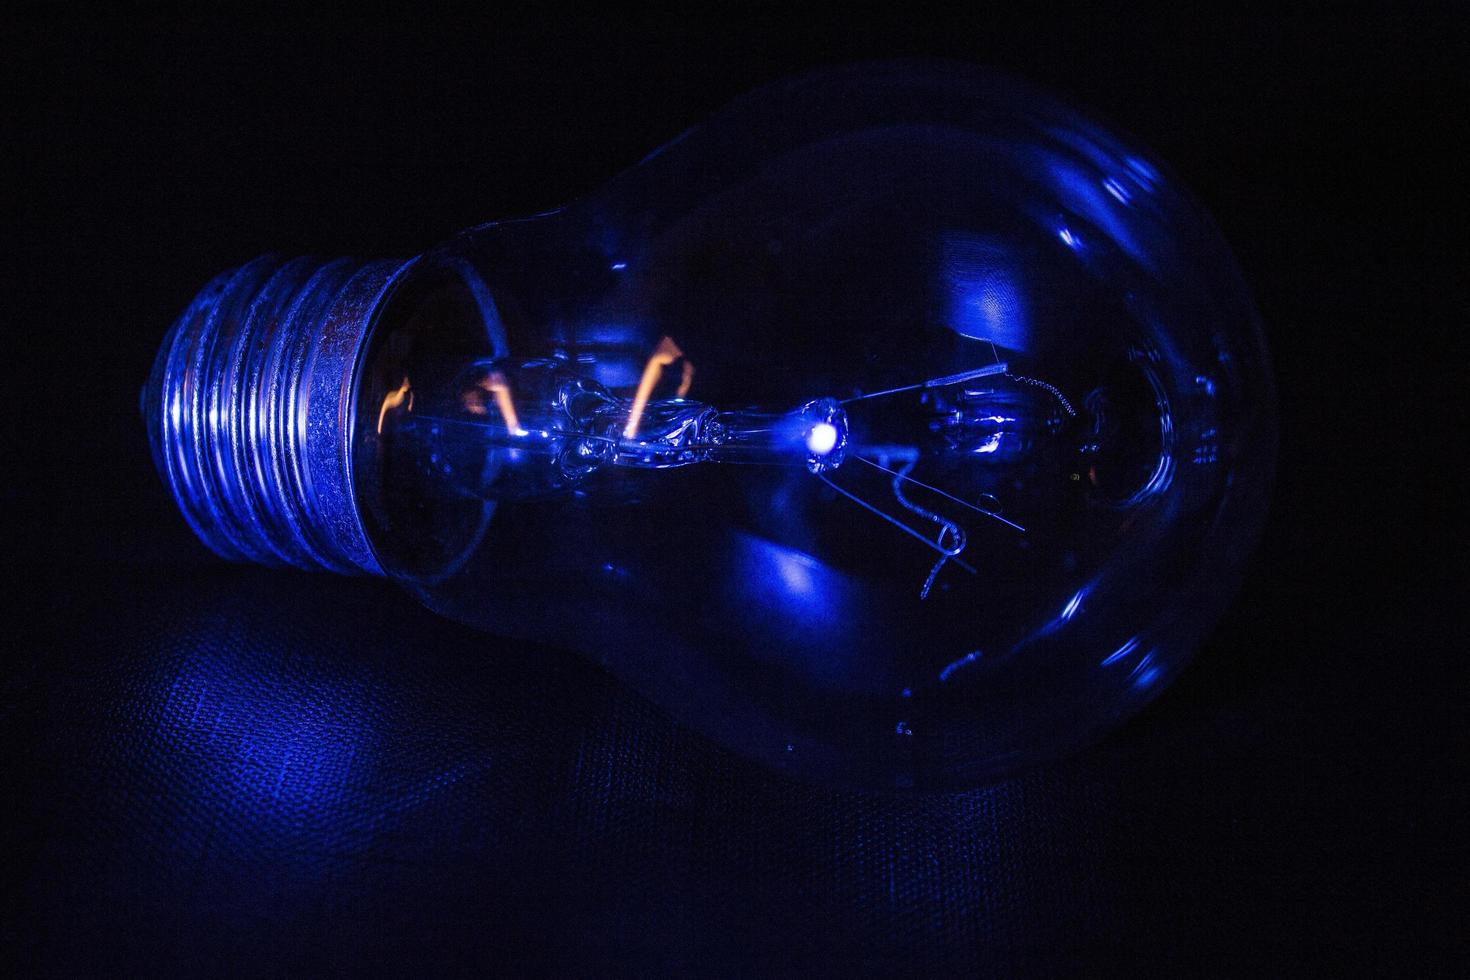 bombilla iluminada por una luz azul foto